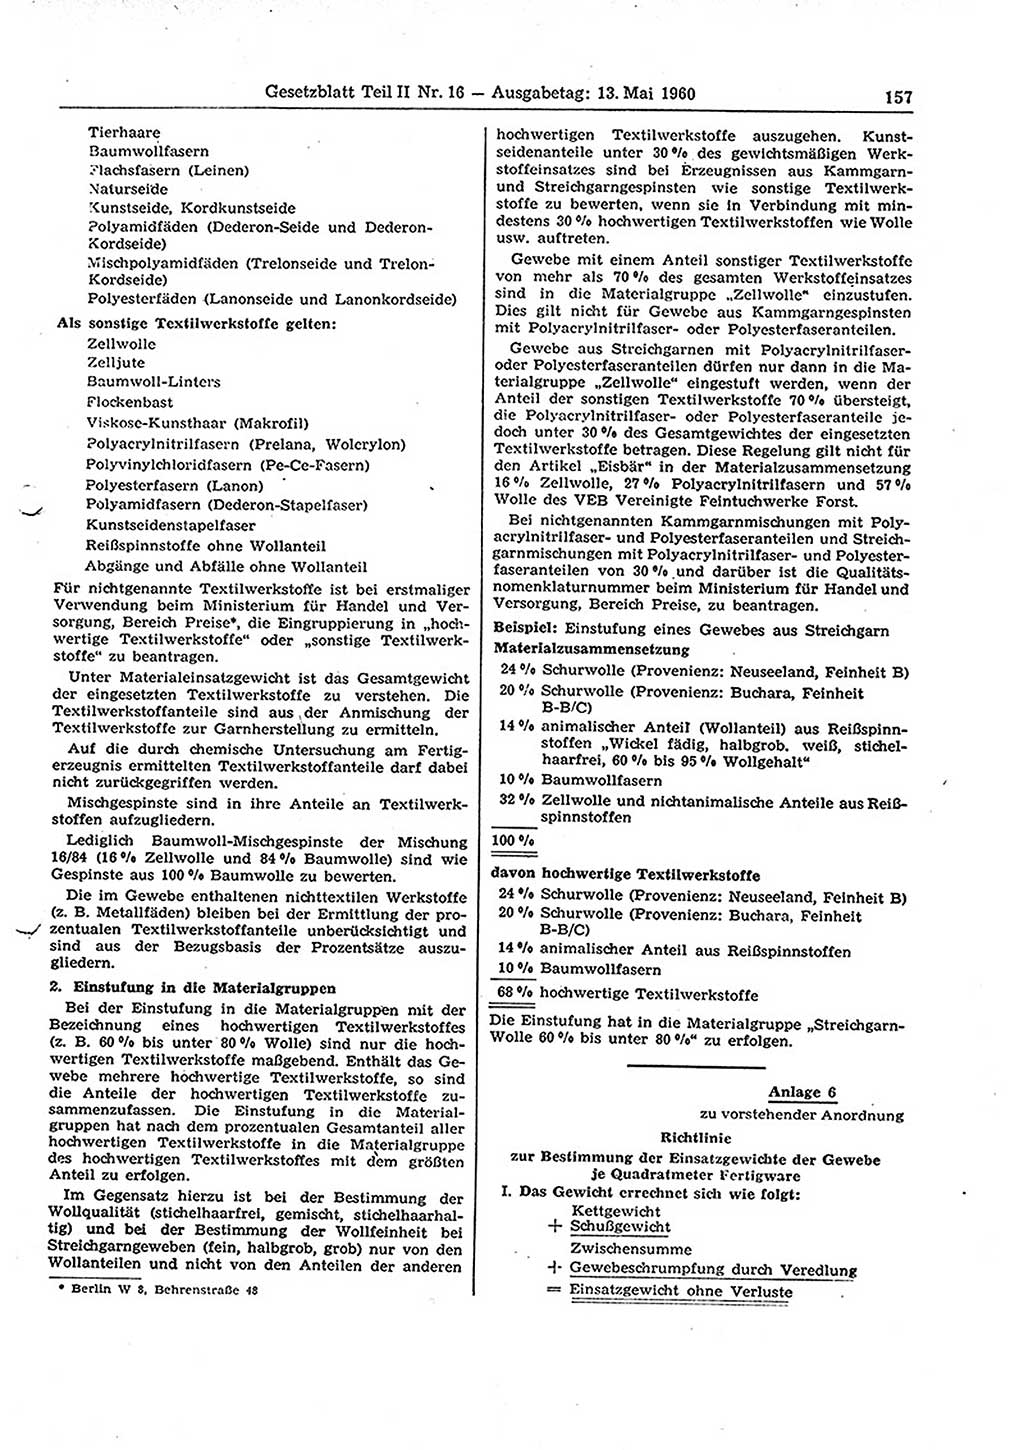 Gesetzblatt (GBl.) der Deutschen Demokratischen Republik (DDR) Teil ⅠⅠ 1960, Seite 157 (GBl. DDR ⅠⅠ 1960, S. 157)